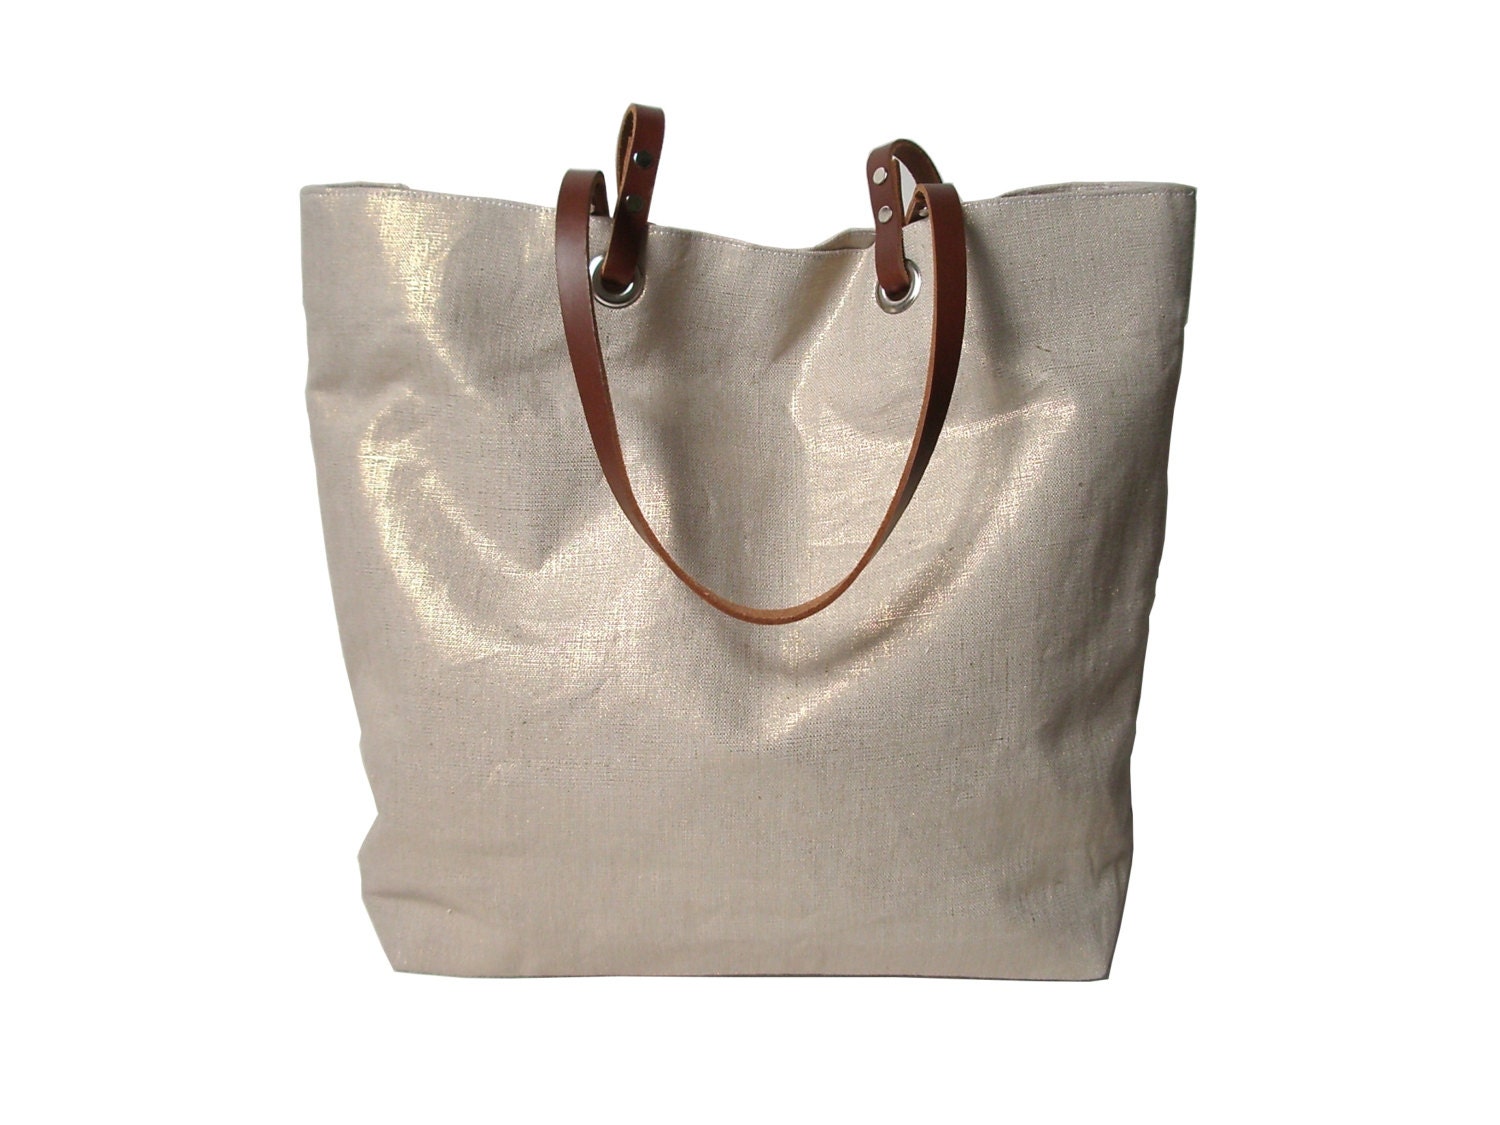 Metallic Tote Bag, Beach Bag in Gold Metallic Linen, Casual Tote Bag ...